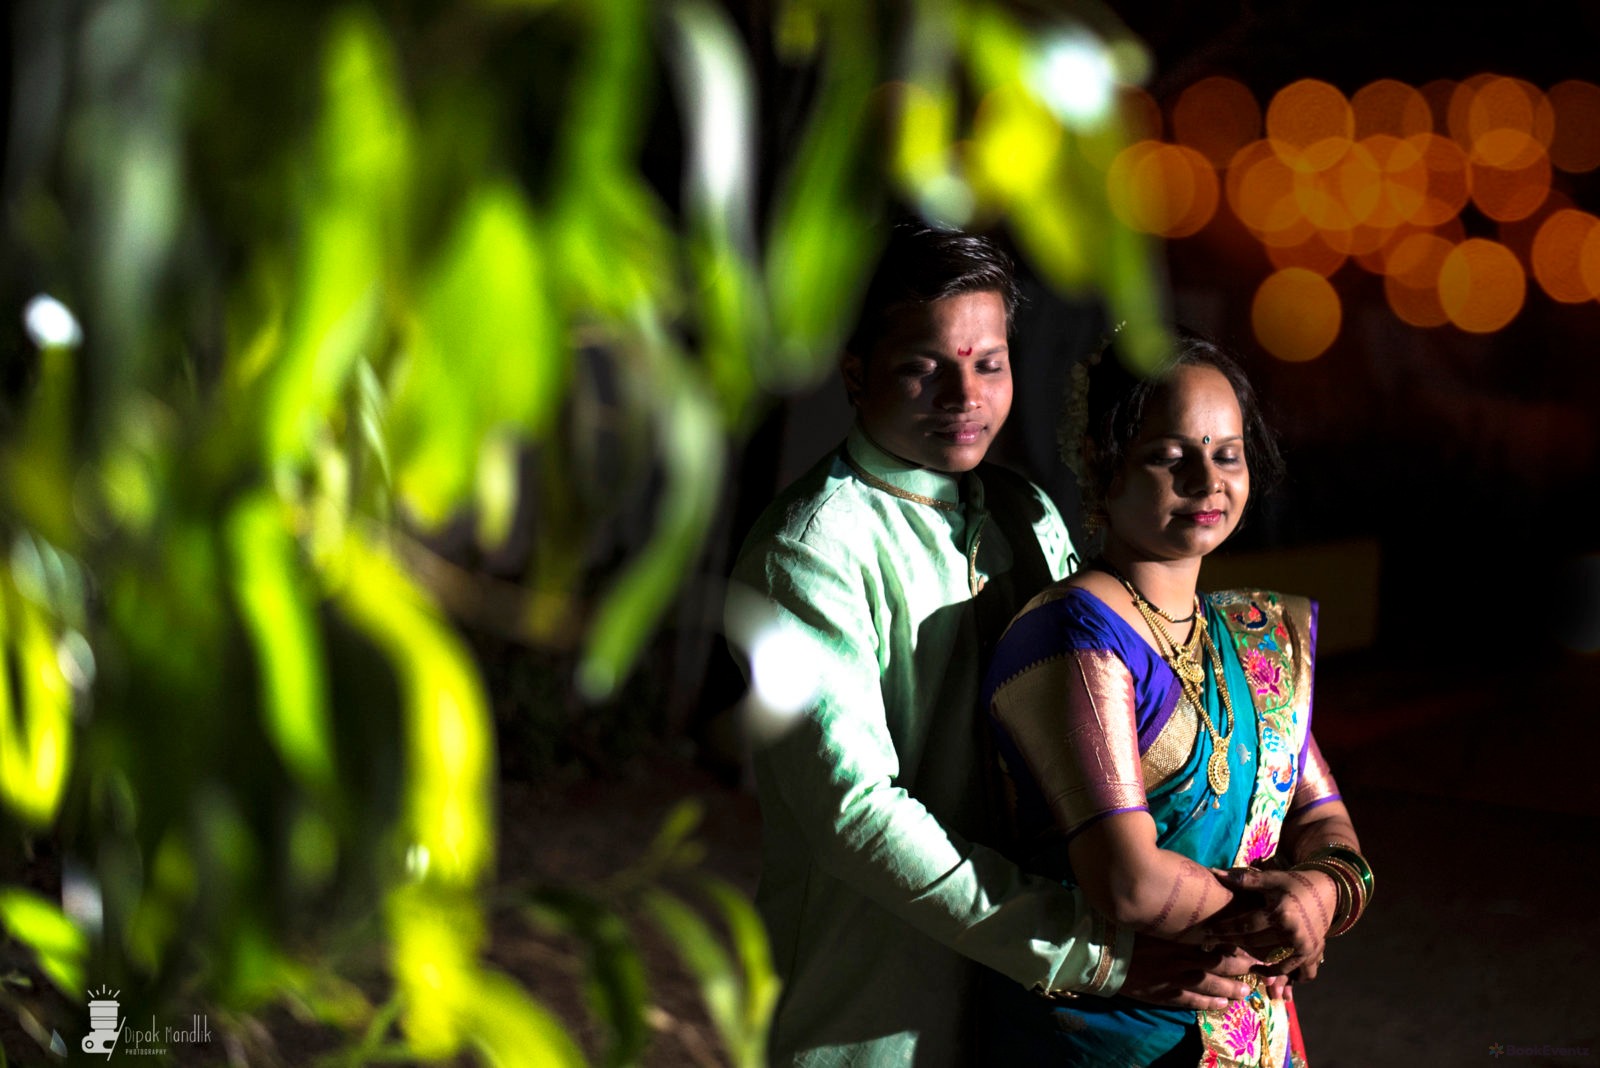 Dipak Mandlik  Wedding Photographer, Mumbai